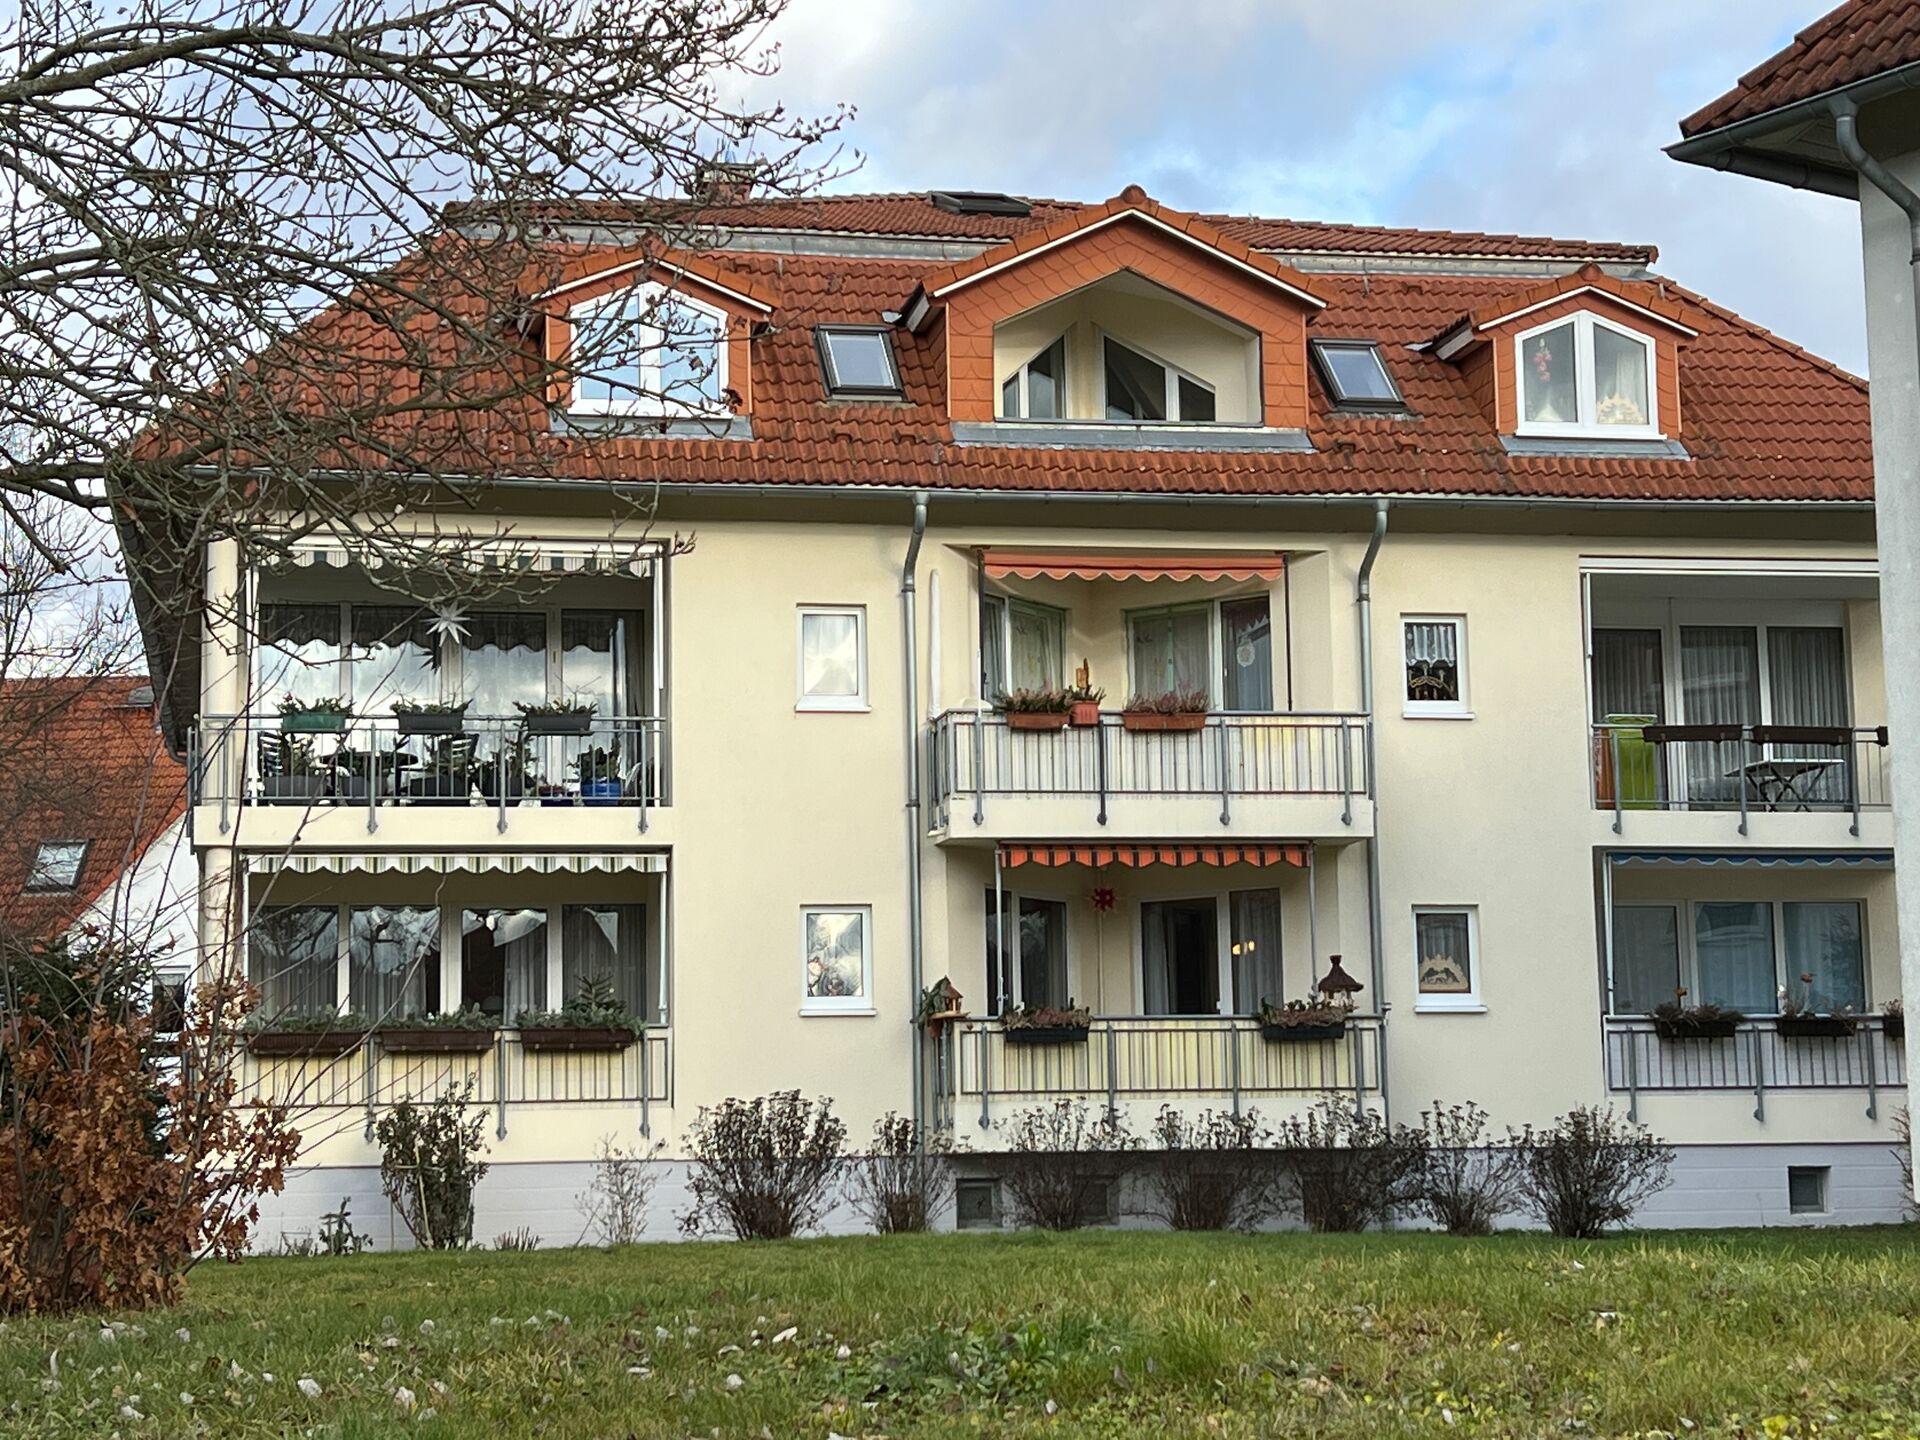 Immobilien von Schwarzheide bis Dresden | mieten oder kaufen